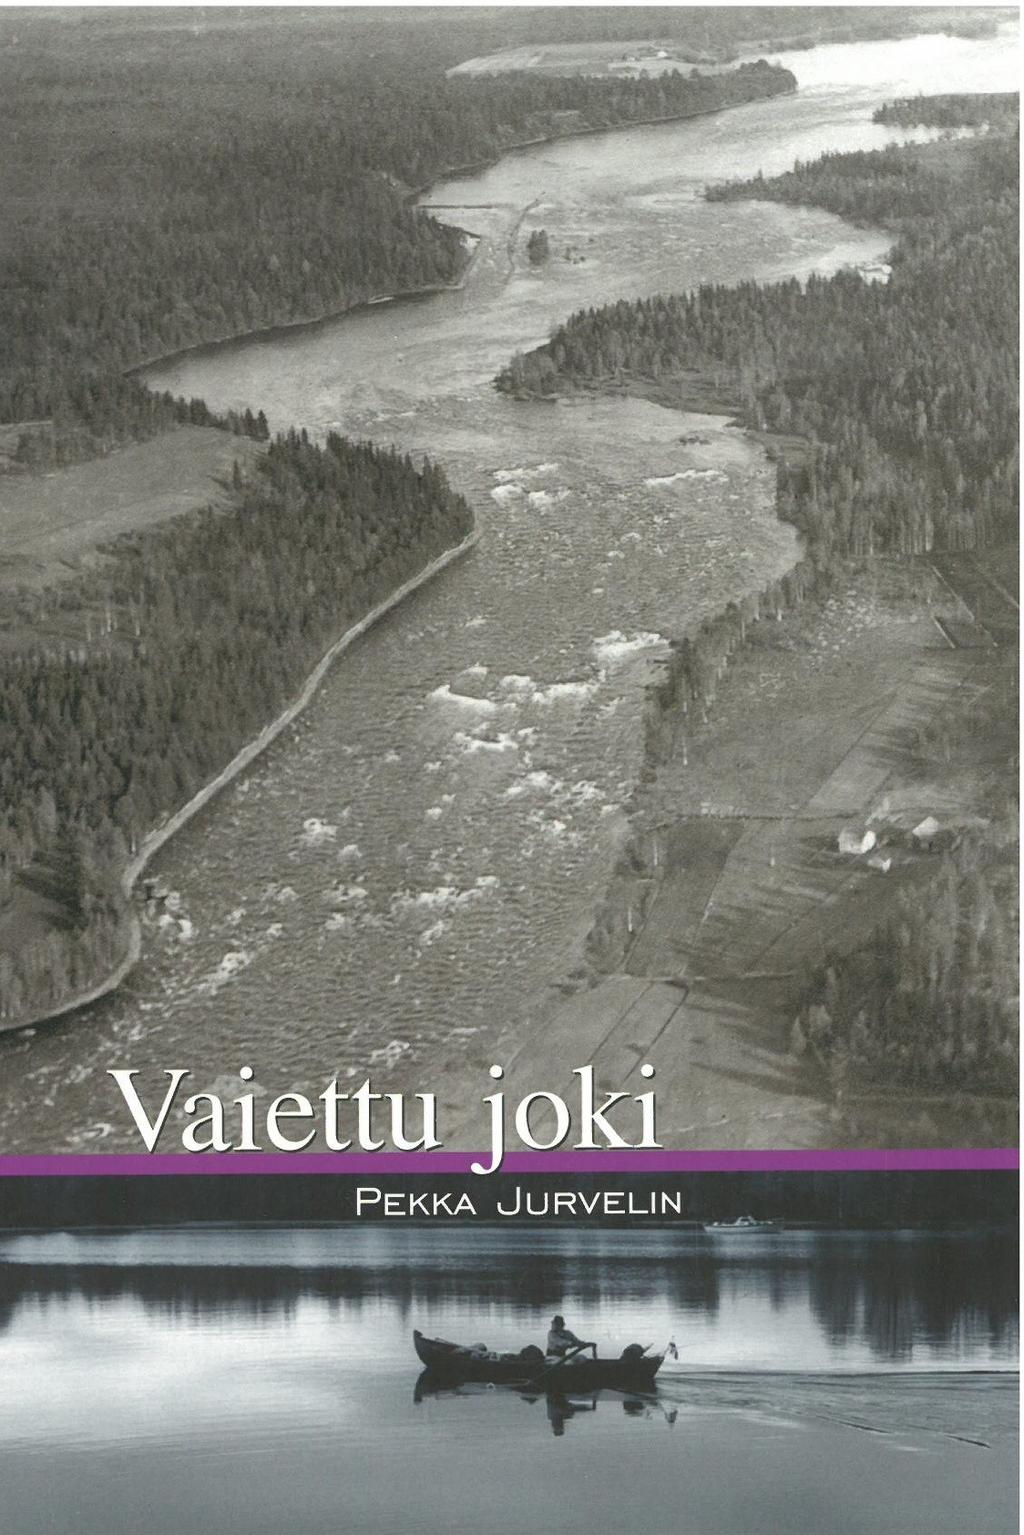 Pekka Jurvelin Vaiettu joki (Oulujoen reitti, 2002) 207 sivua. Hinta 20,00 (vain käteismaksu) Vaiettu joki kertoo Pekka Jurvelinin venematkasta Kainuun saloilta merelle soutuveneellä.